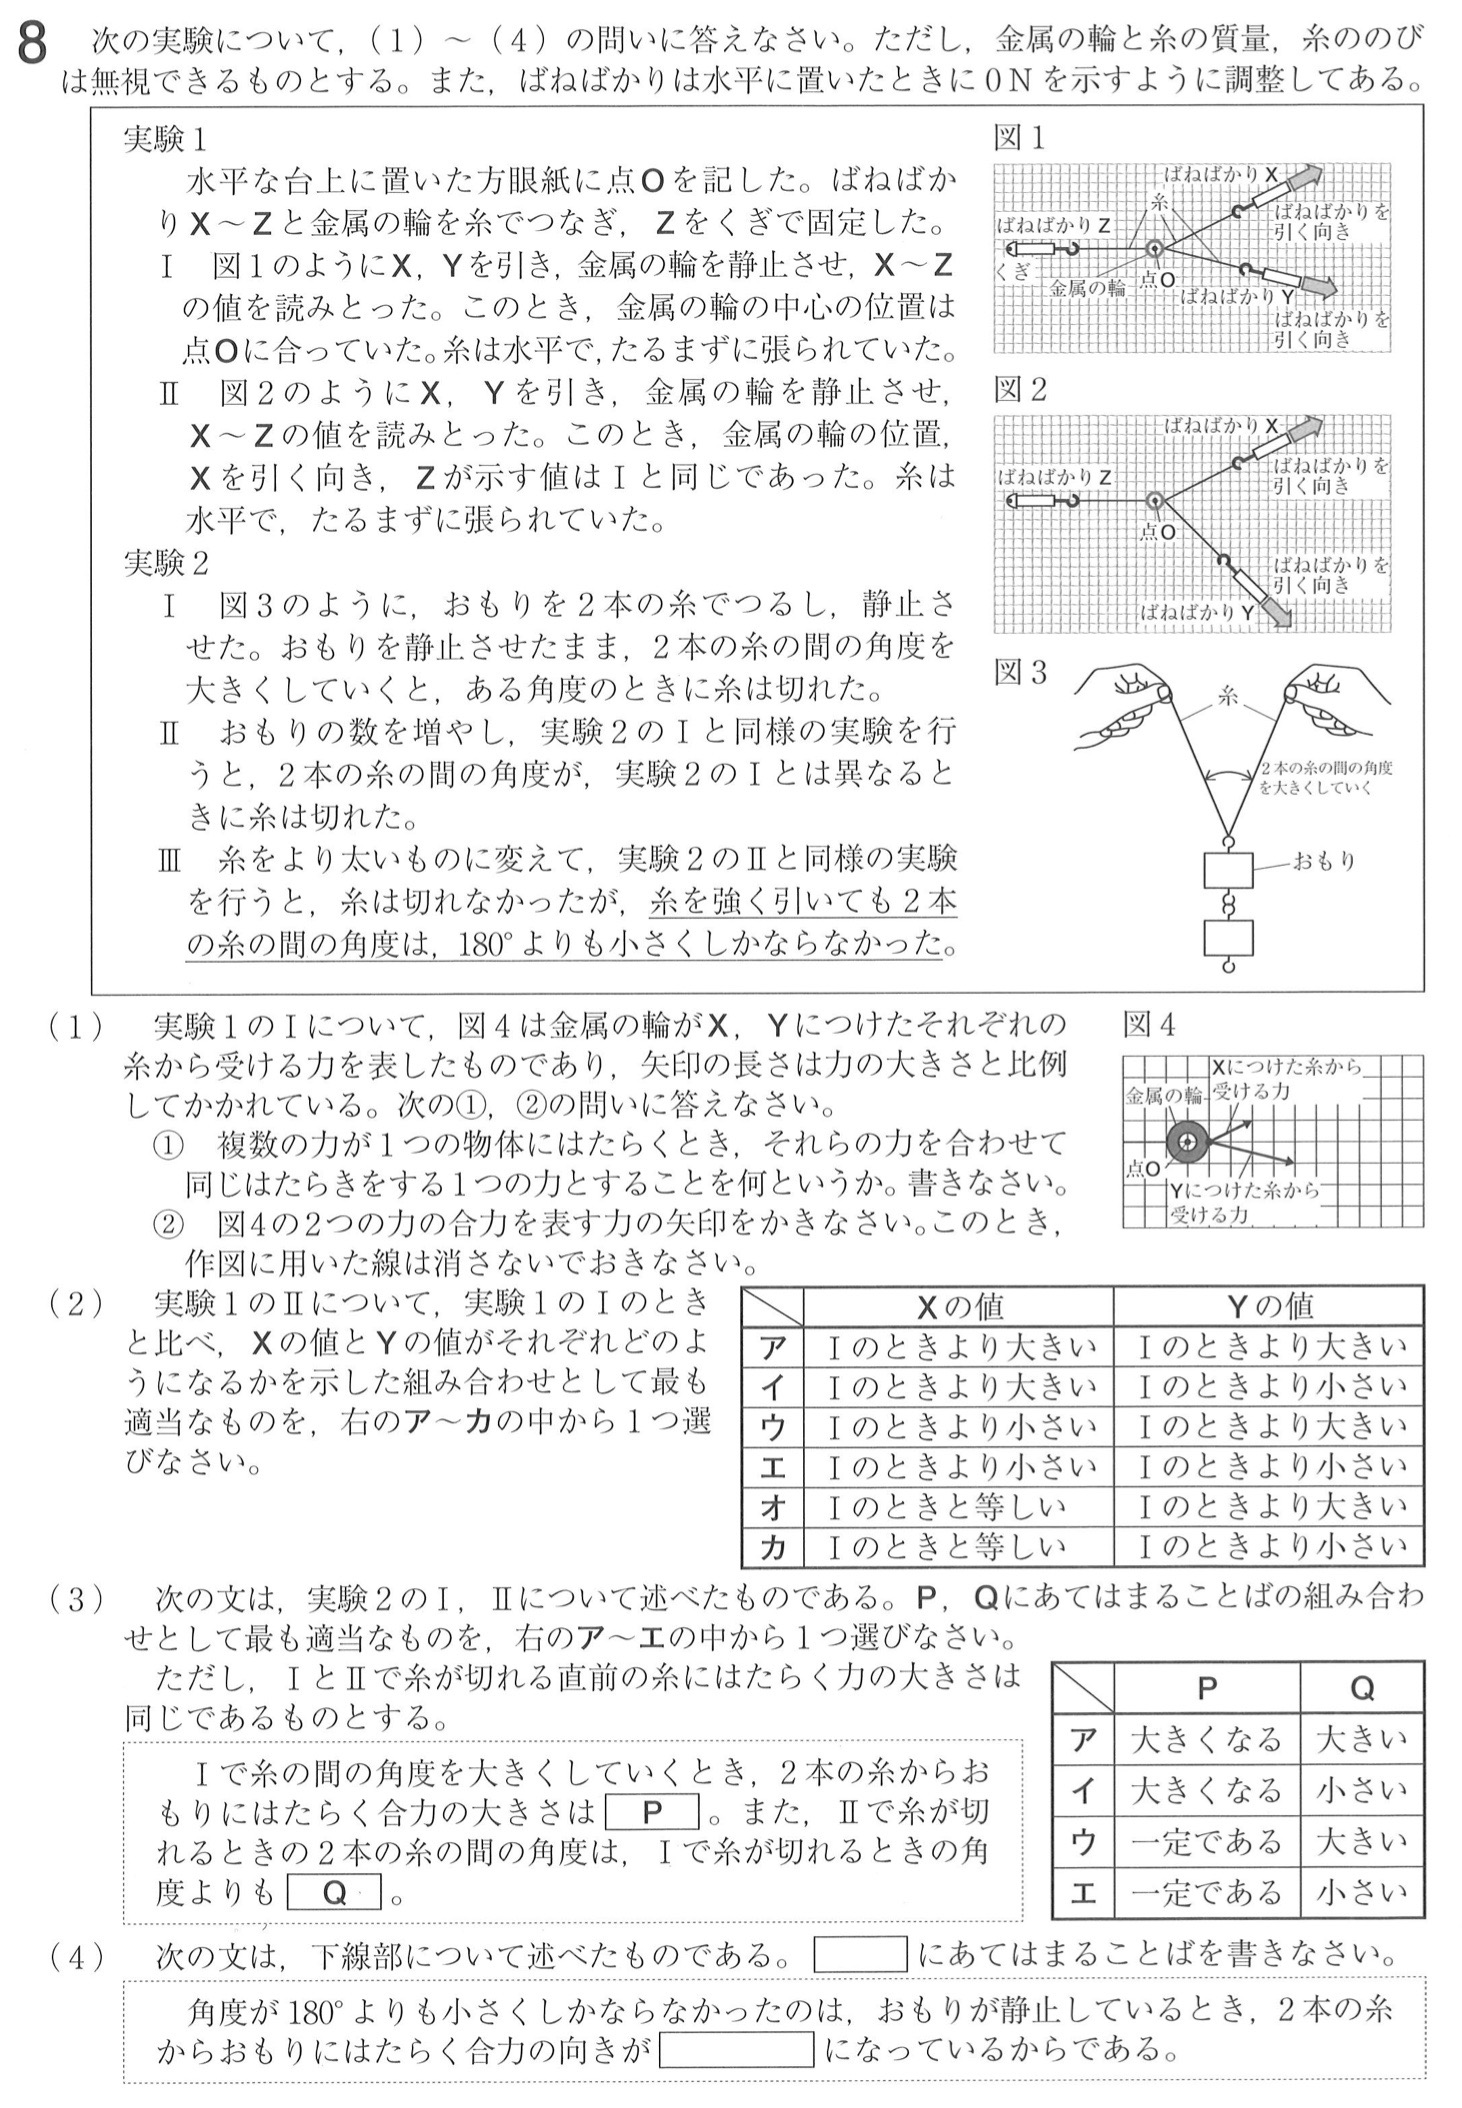 福島県公立高校入試理科2022年(令和4年)過去問題